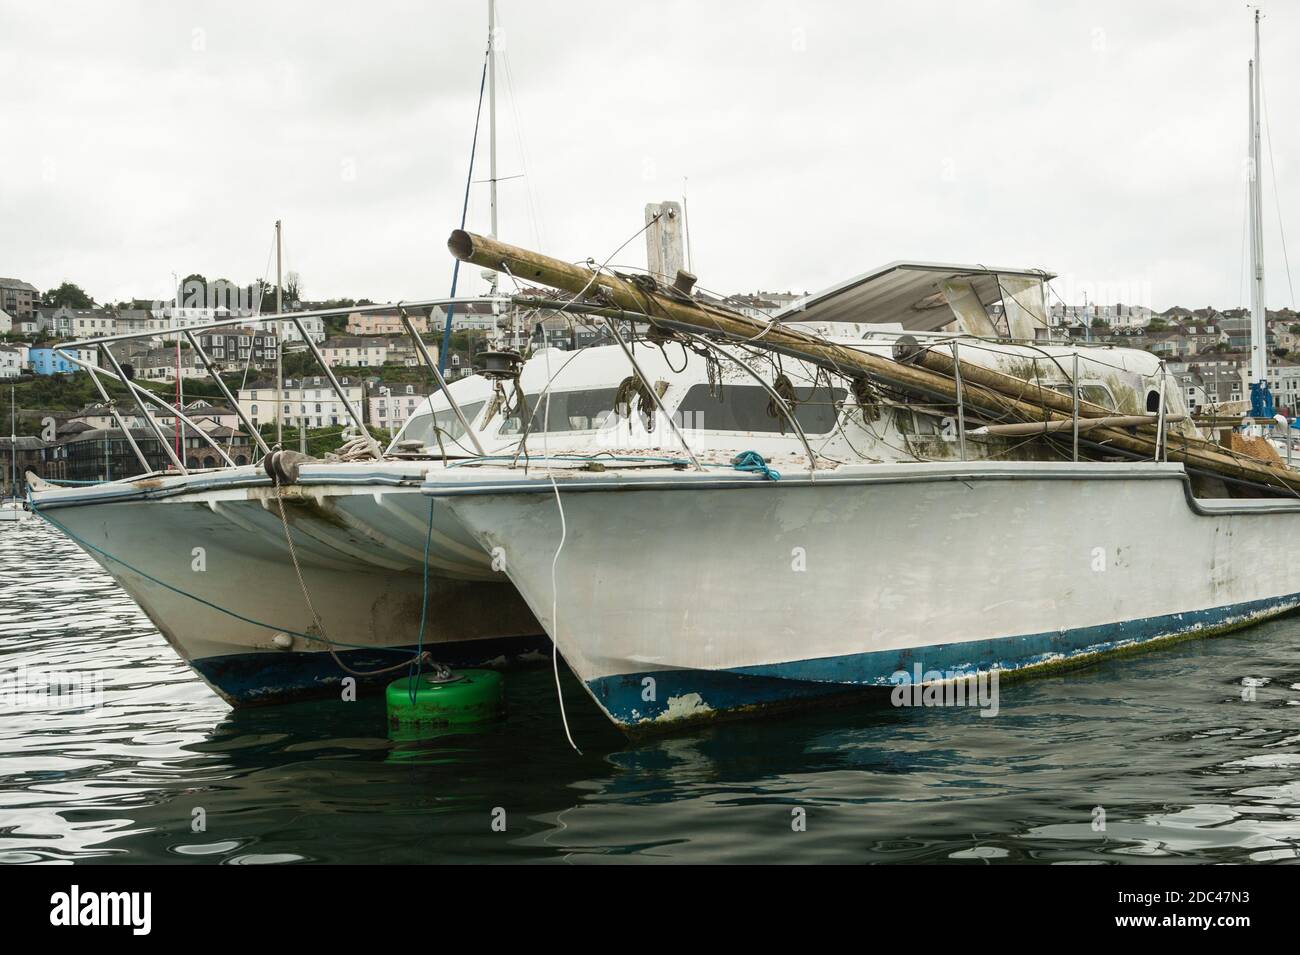 Dismasted Catalac Catamaran at anchor Stock Photo